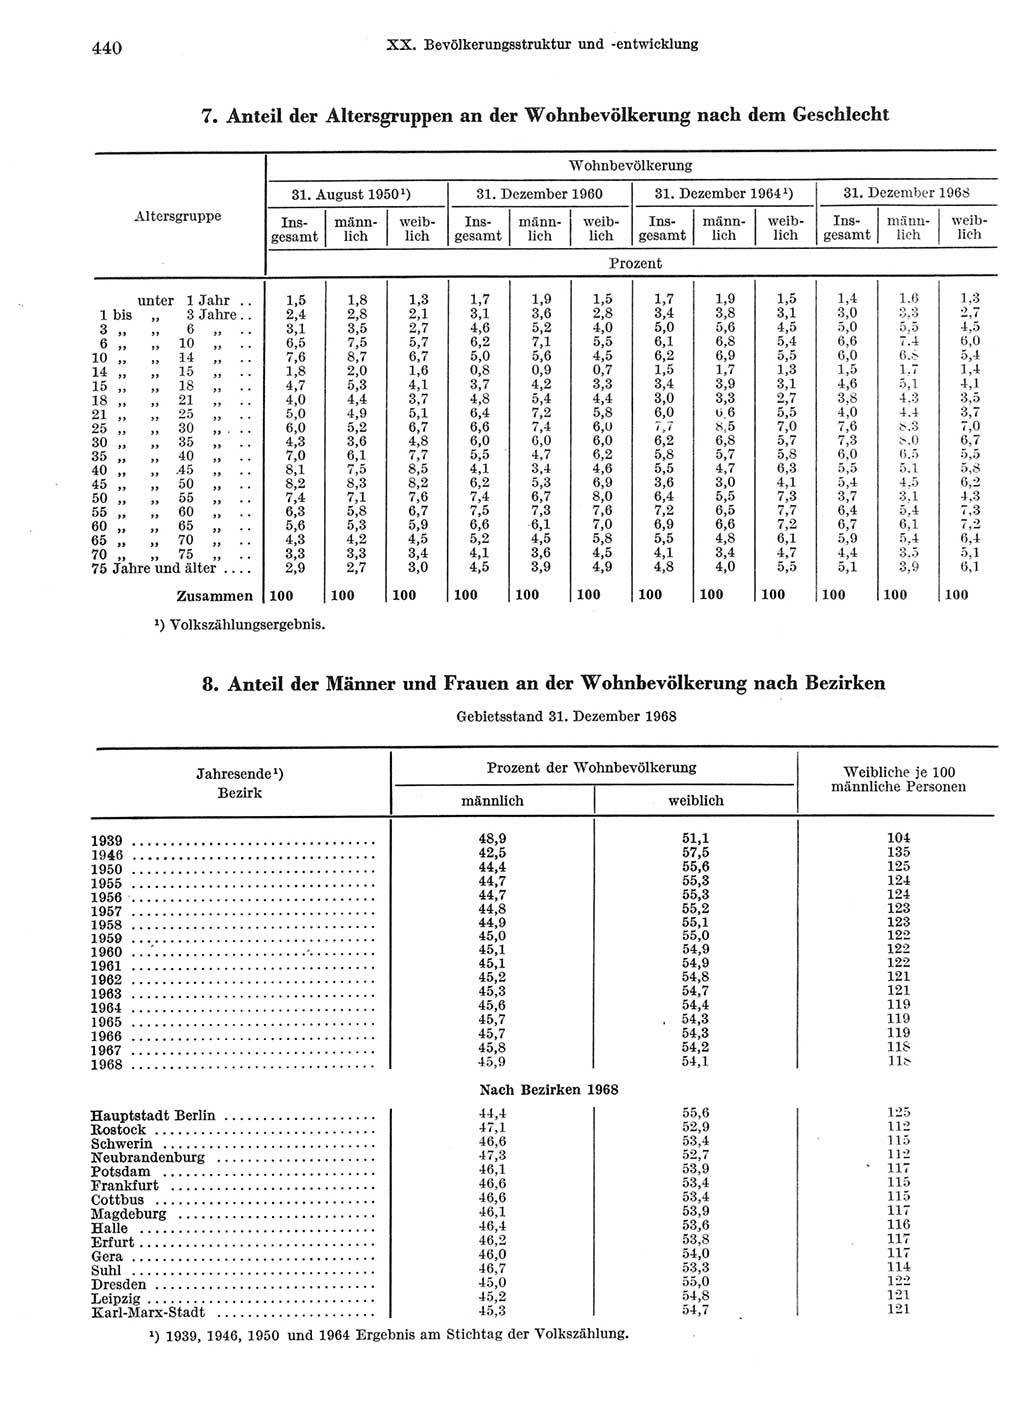 Statistisches Jahrbuch der Deutschen Demokratischen Republik (DDR) 1969, Seite 440 (Stat. Jb. DDR 1969, S. 440)